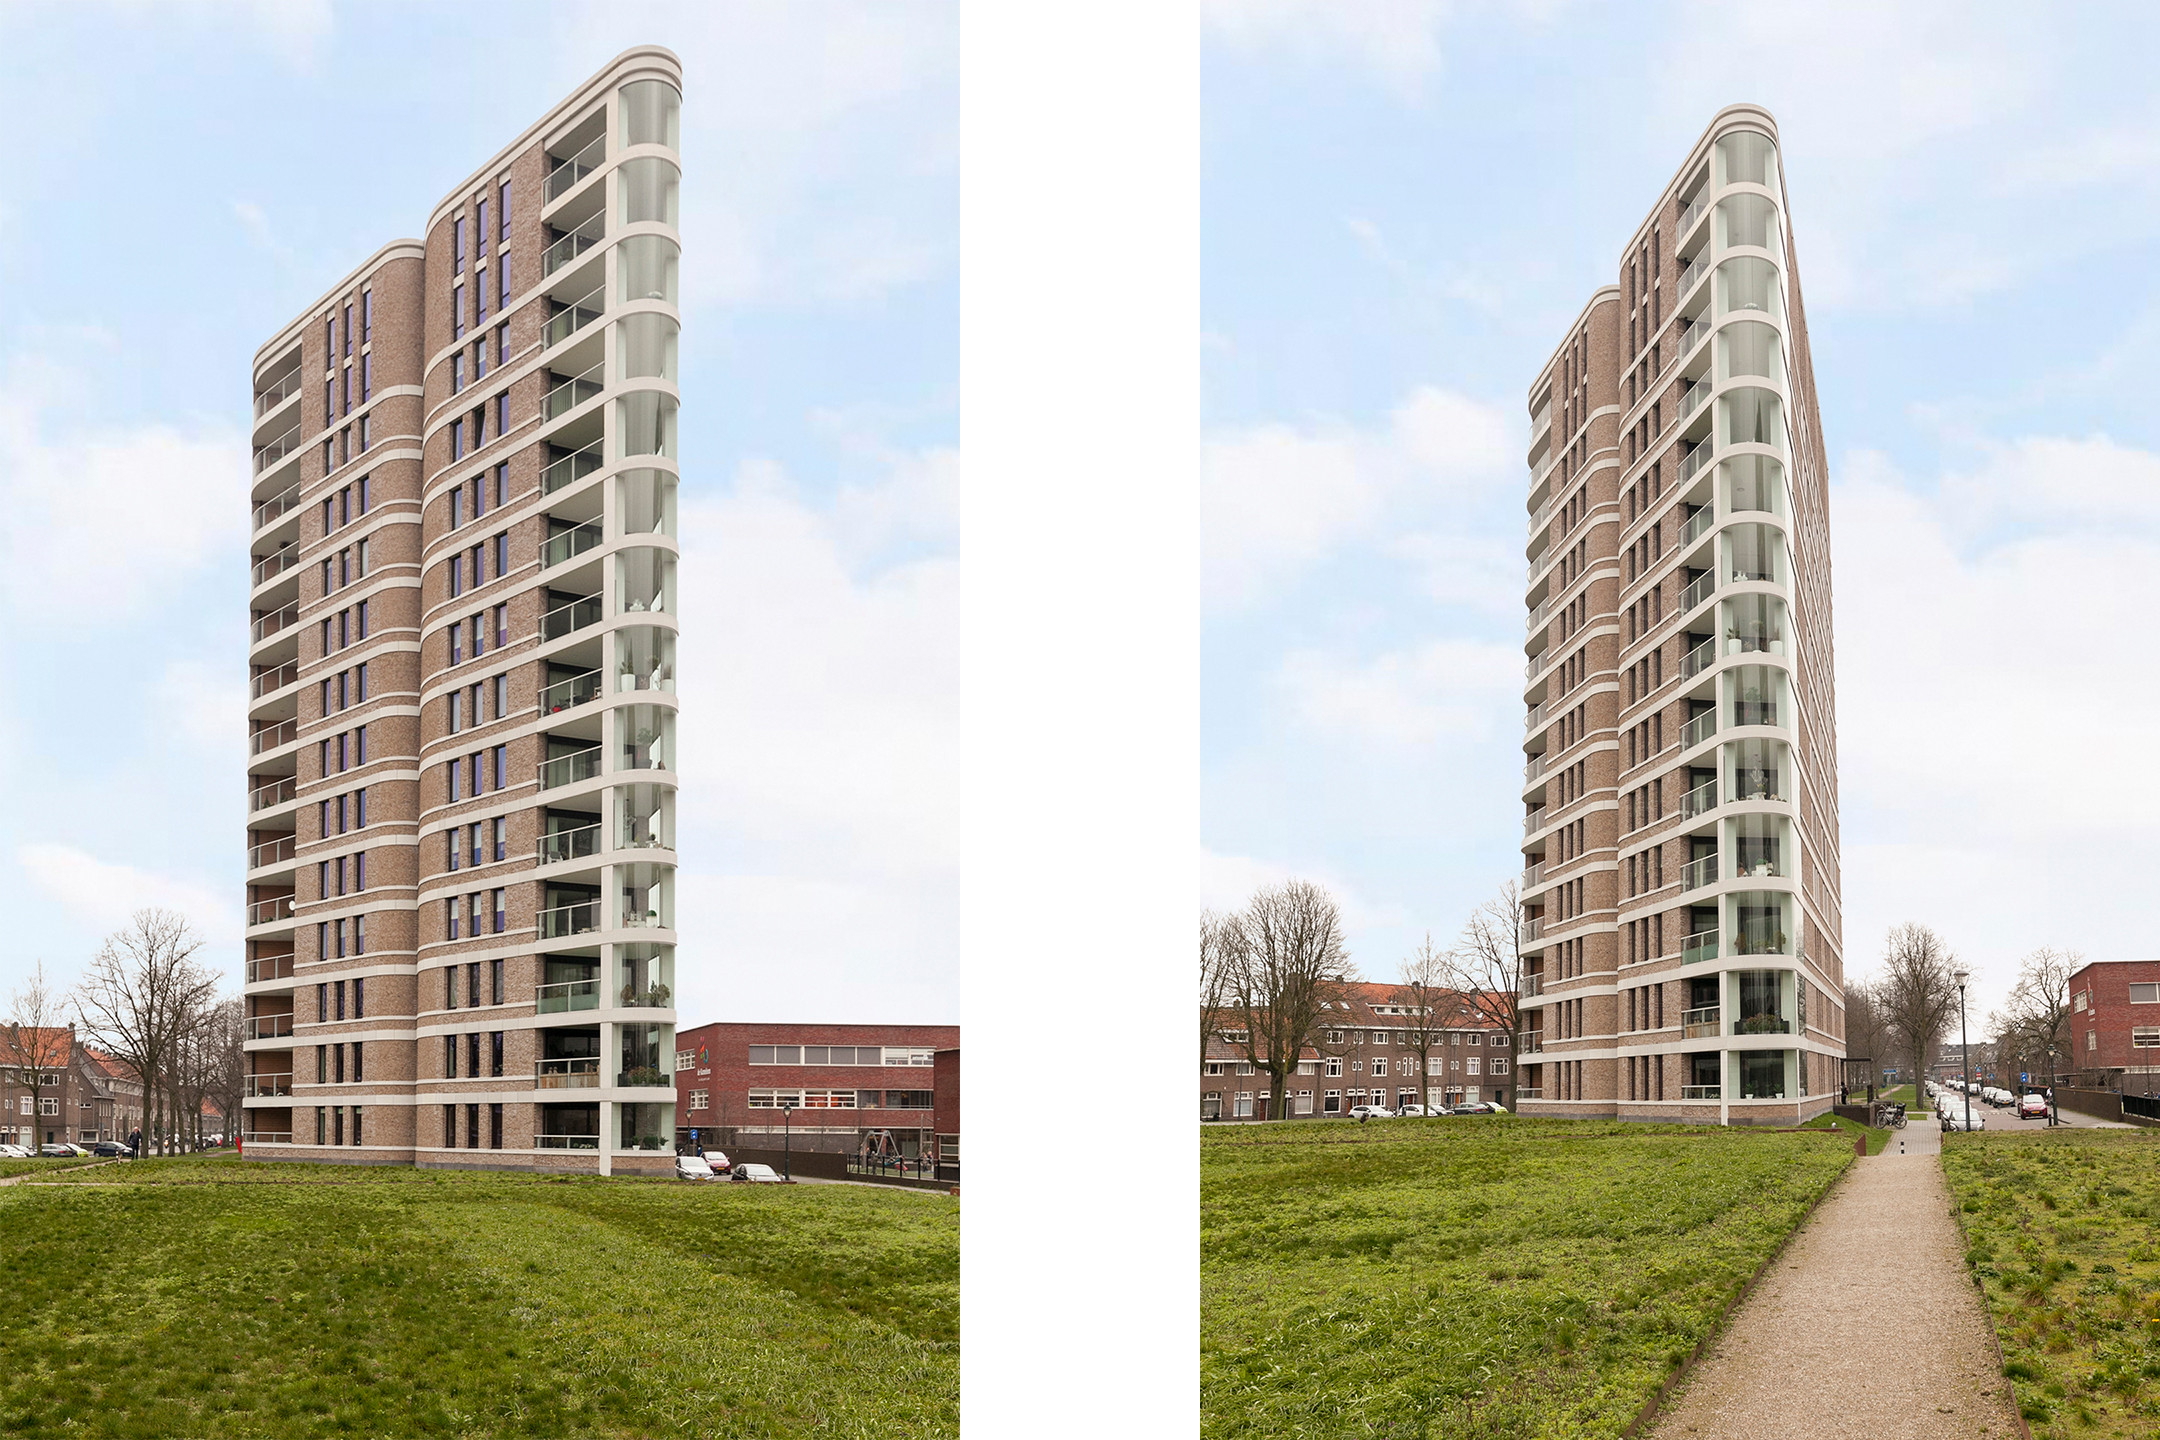 Bekijk foto 1/2 van apartment in 's-Hertogenbosch